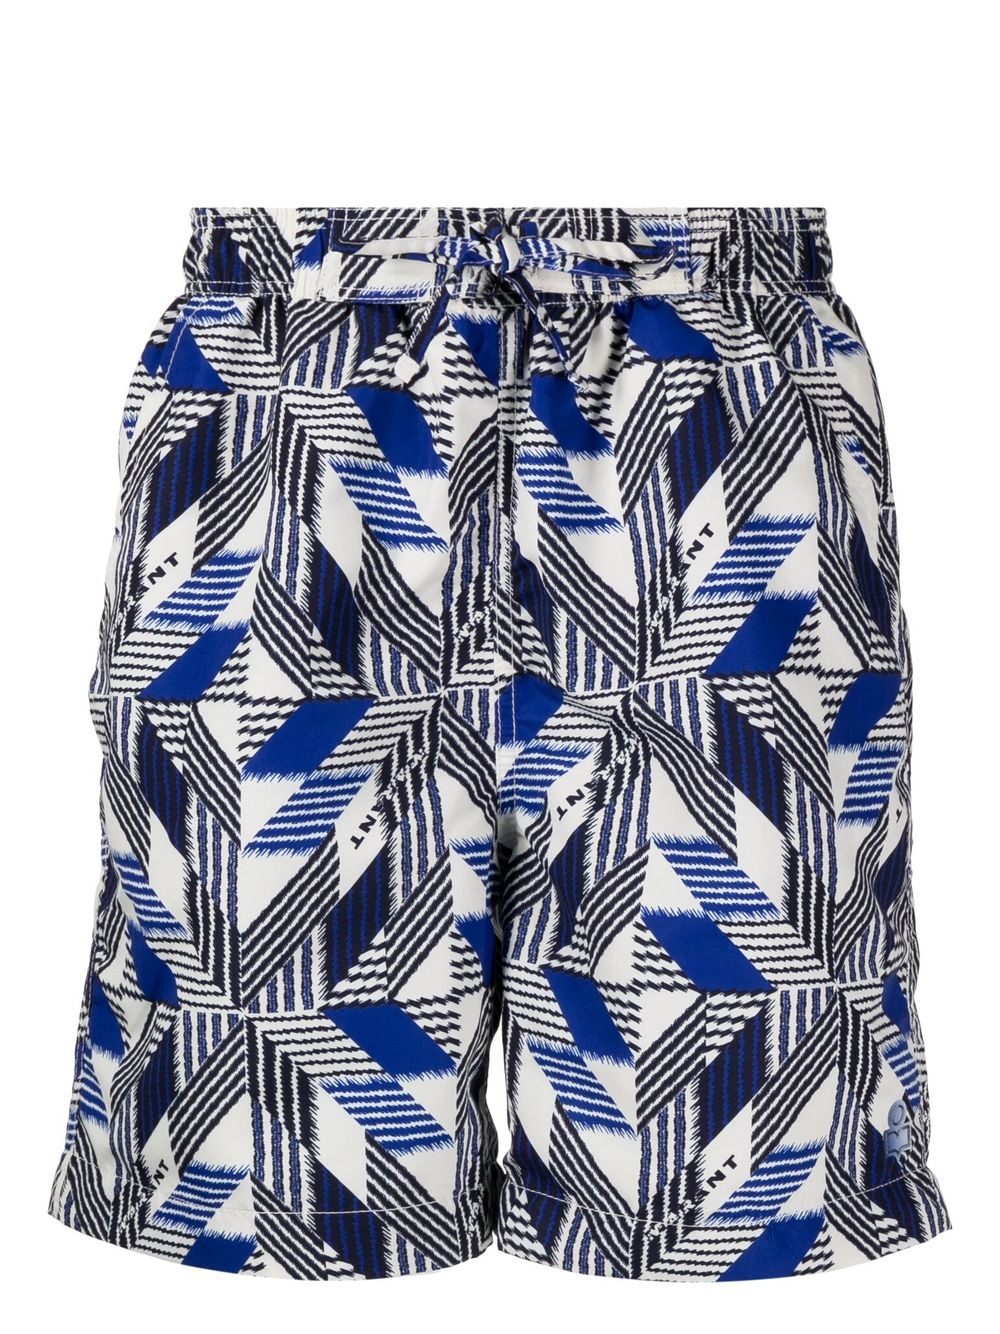 MARANT geometric print swim shorts - Neutrals von MARANT